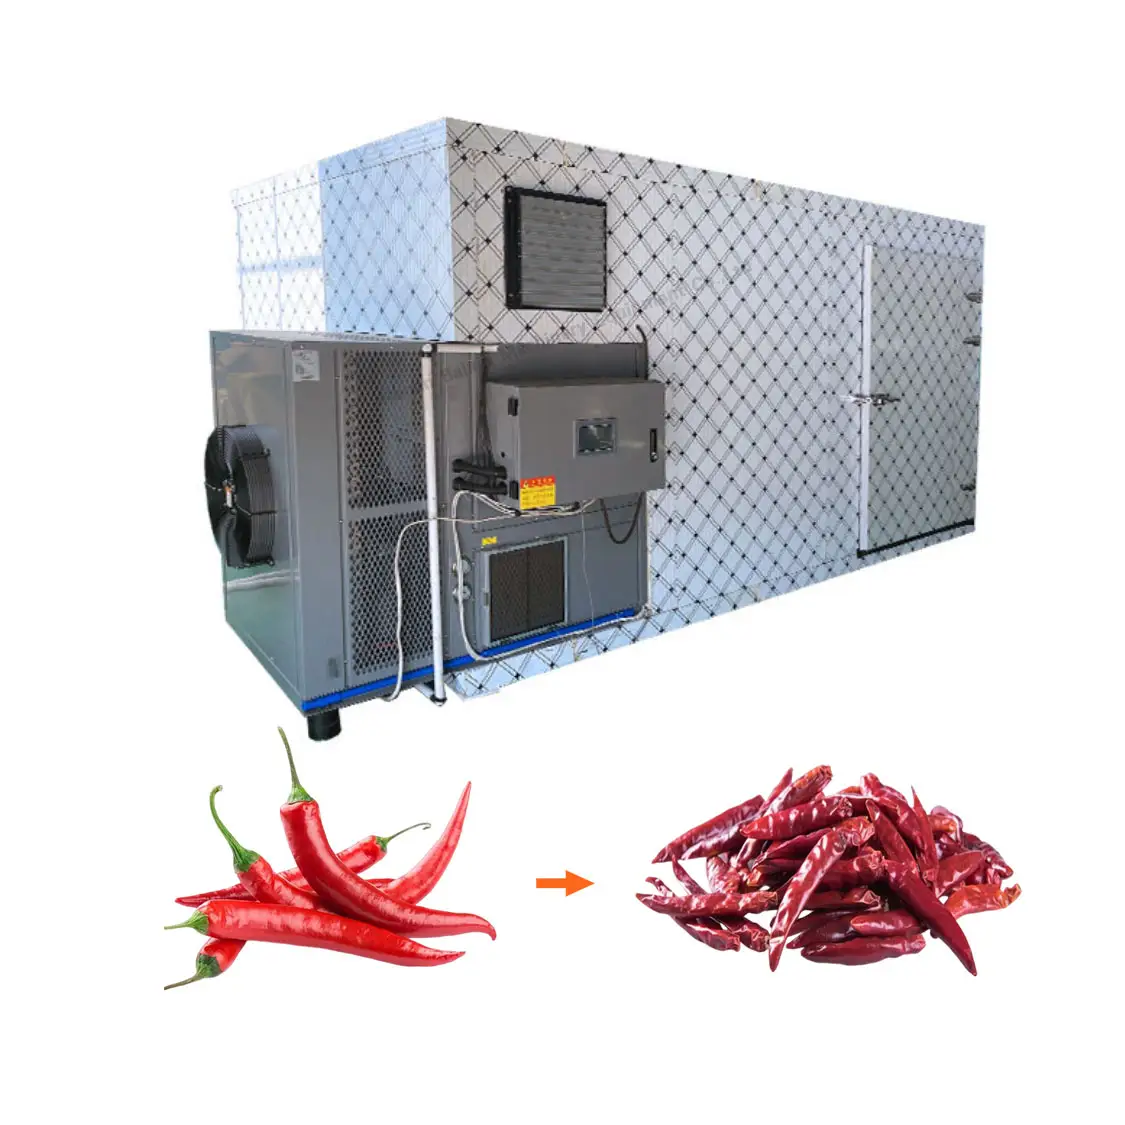 Pimienta eléctrica industrial Hoja de moringa Fruta Vegetal Secador de alimentos Horno de secado de chile rojo